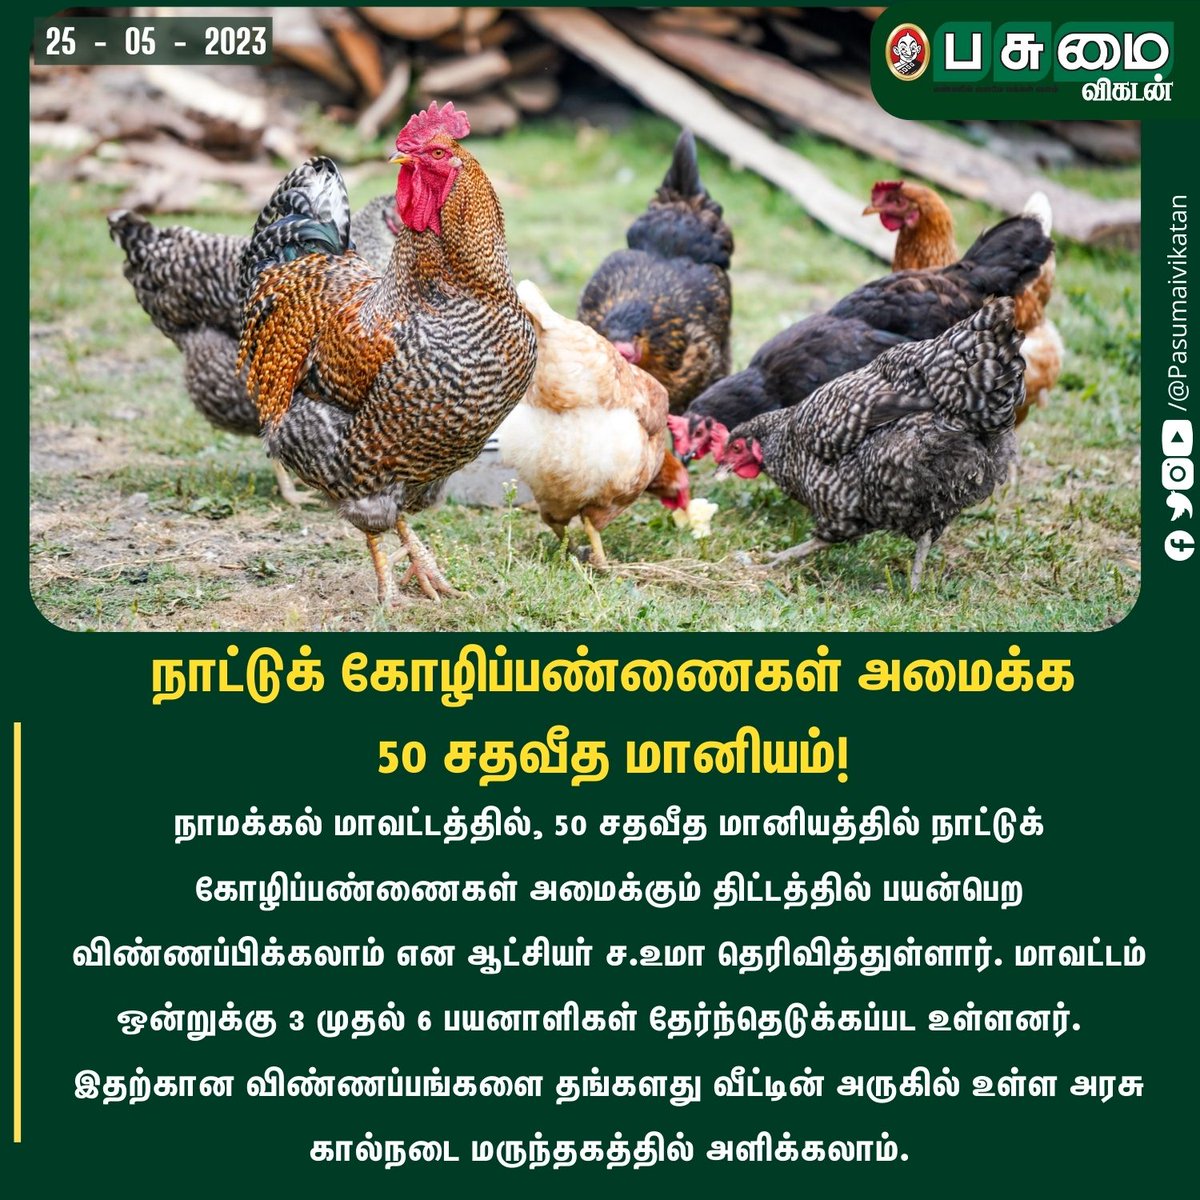 நாட்டுக் கோழிப்பண்ணைகள் அமைக்க 50 சதவீத மானியம்!

#Hens #Chicken #countrychicken #Government